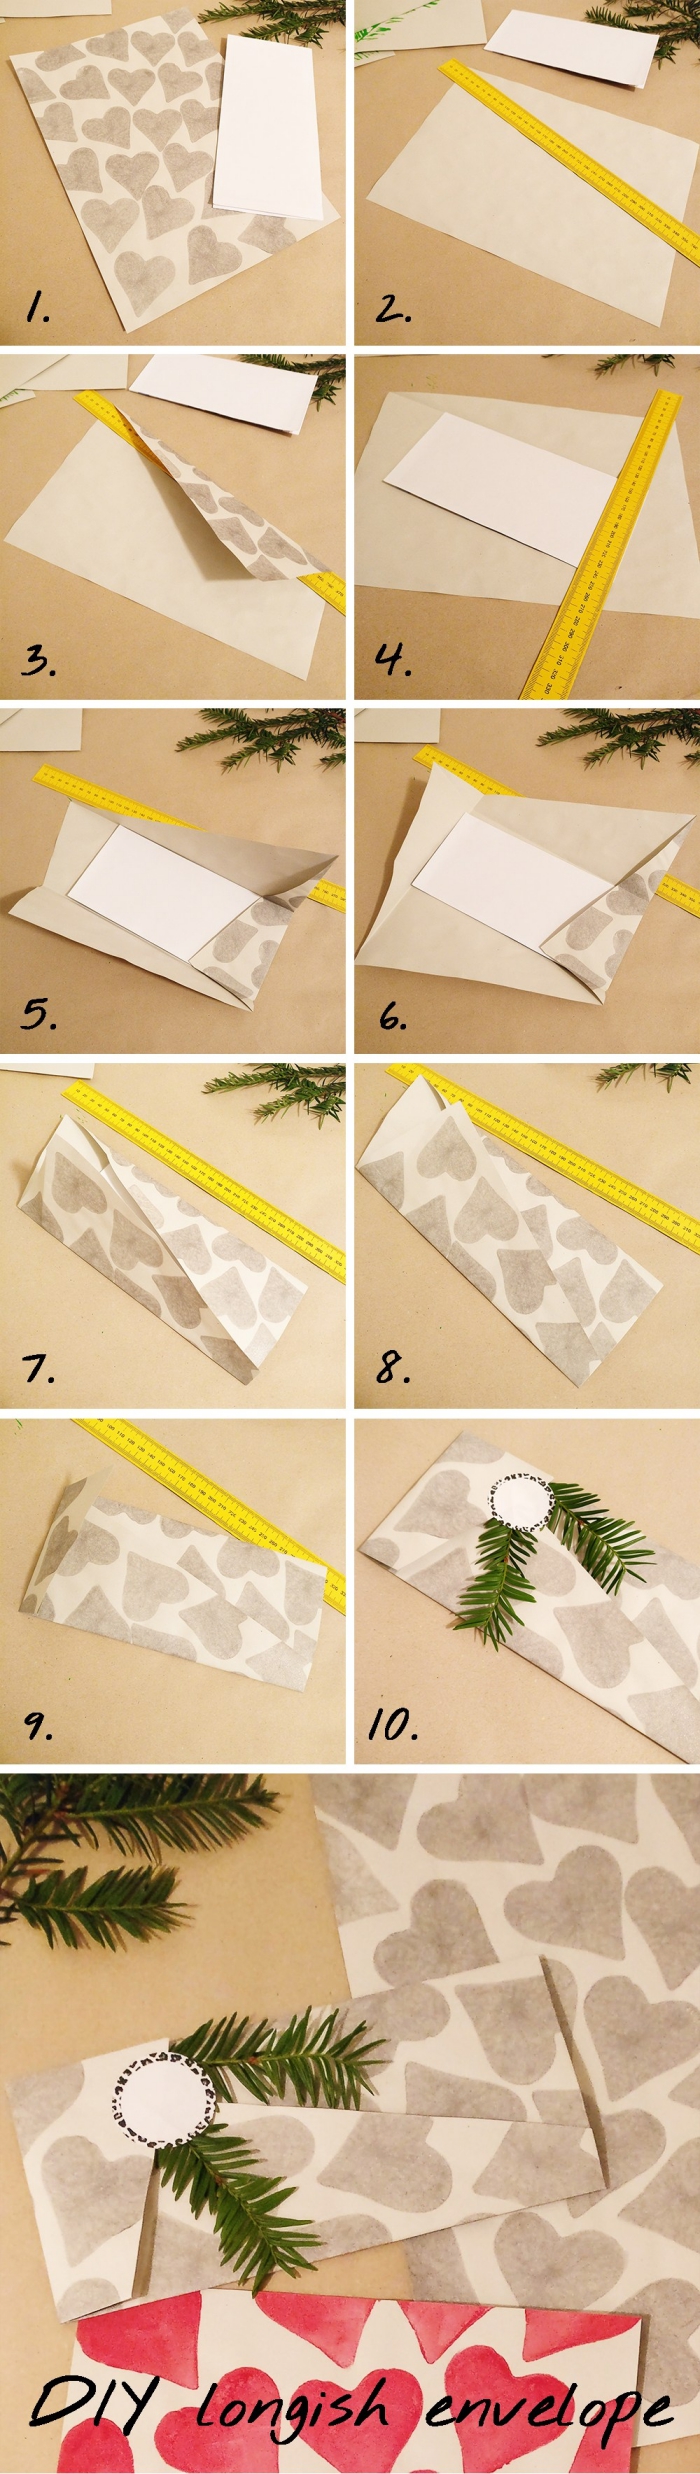 idée d'emballage de noël à faire soi-même, faire une enveloppe avec une feuille a4 imprimé coeurs, enveloppe de noël naturelle avec rabat asymétrique décorée avec une branche de sapin